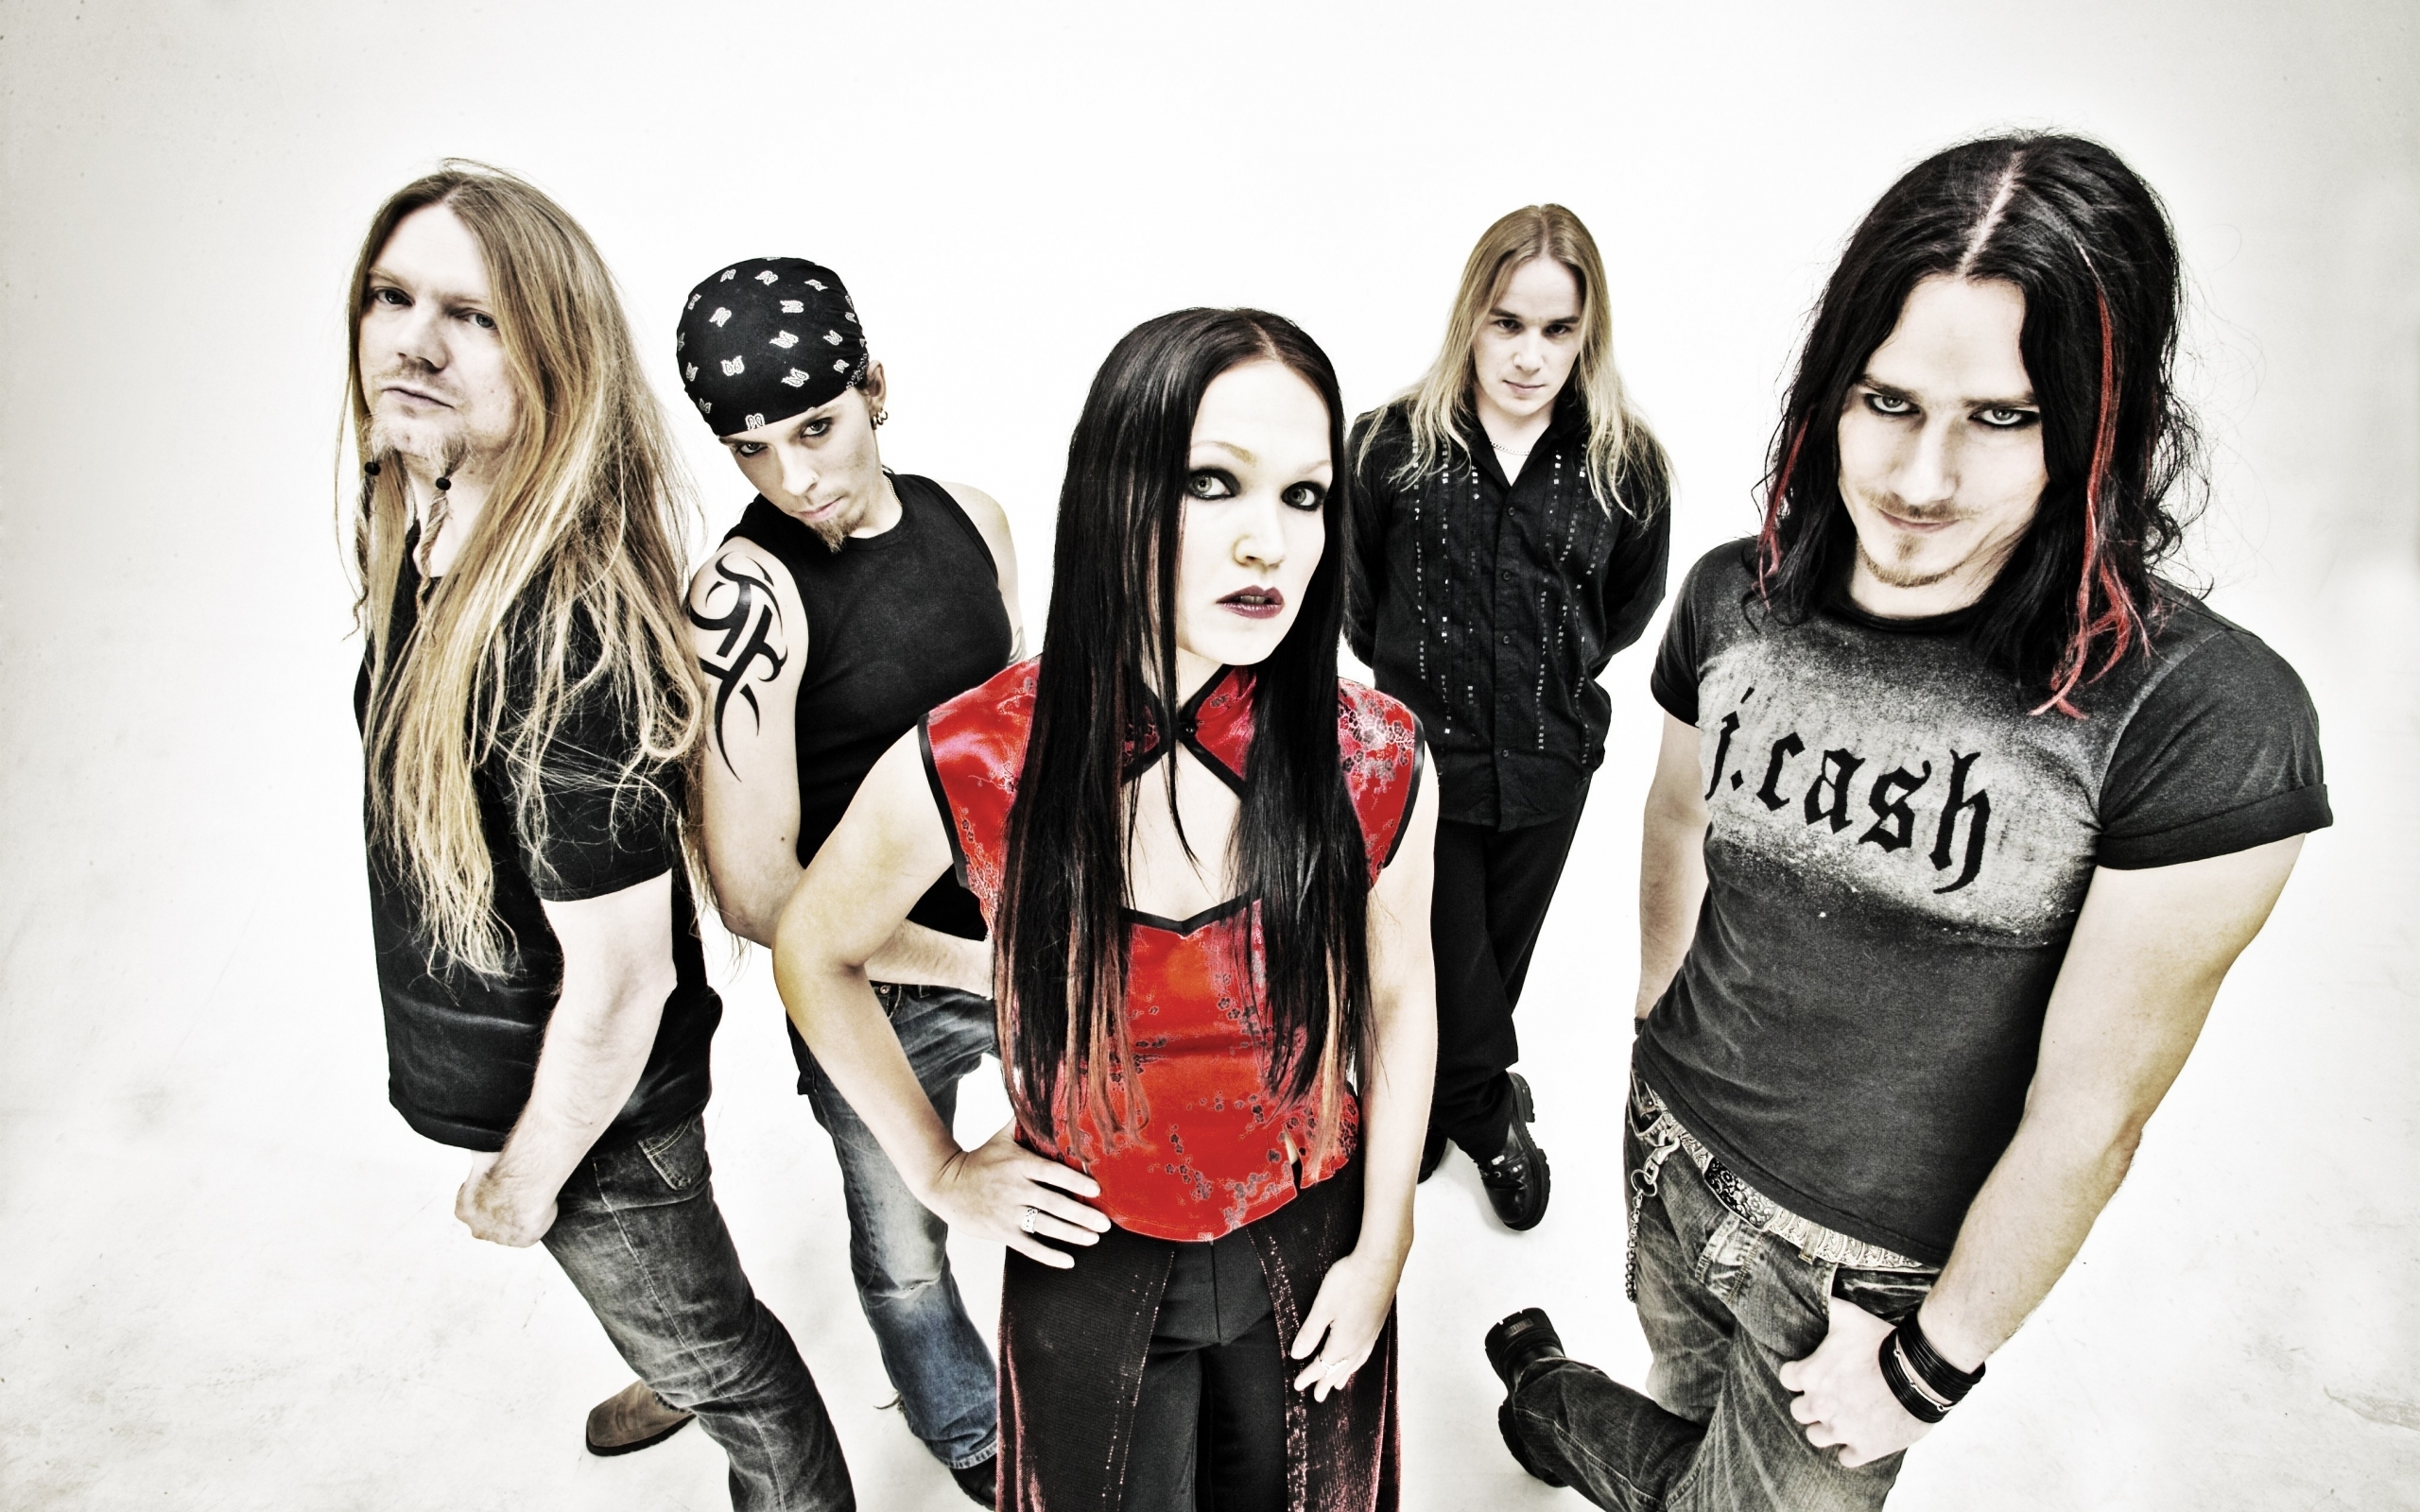 Descarga gratuita de fondo de pantalla para móvil de Personas, Nightwish, Música.